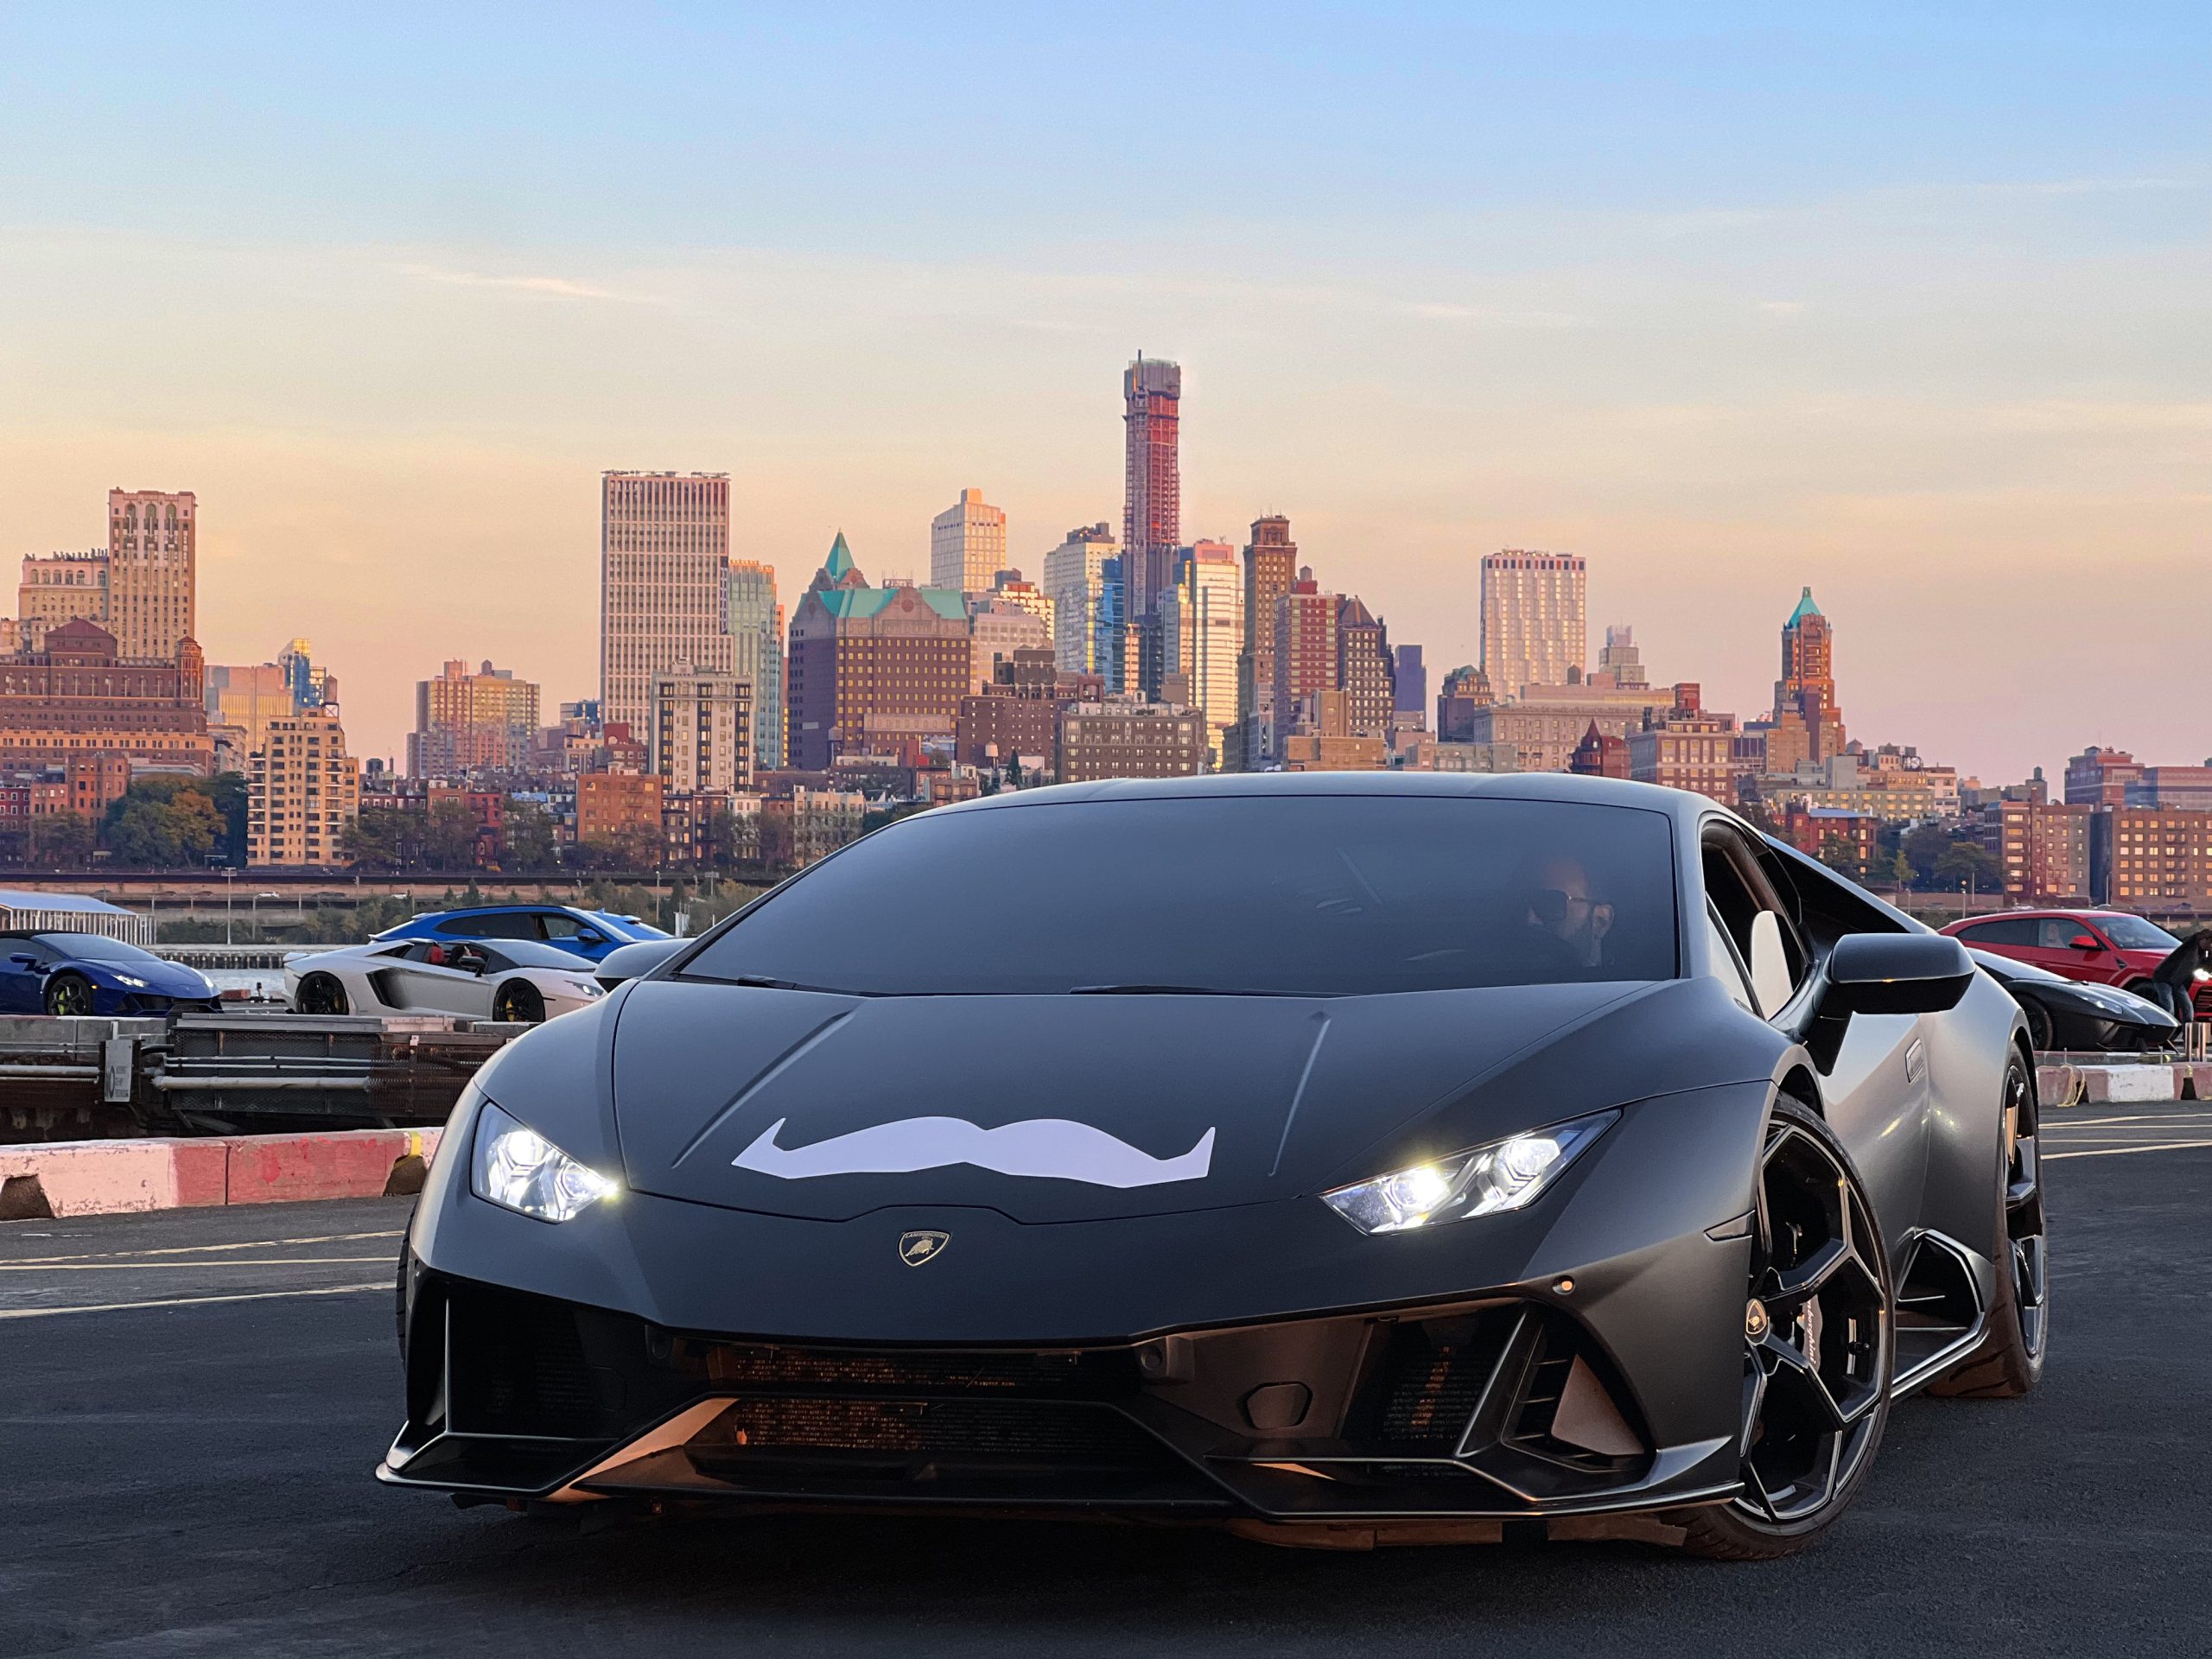 Automobili Lamborghini renews its support for Movember 